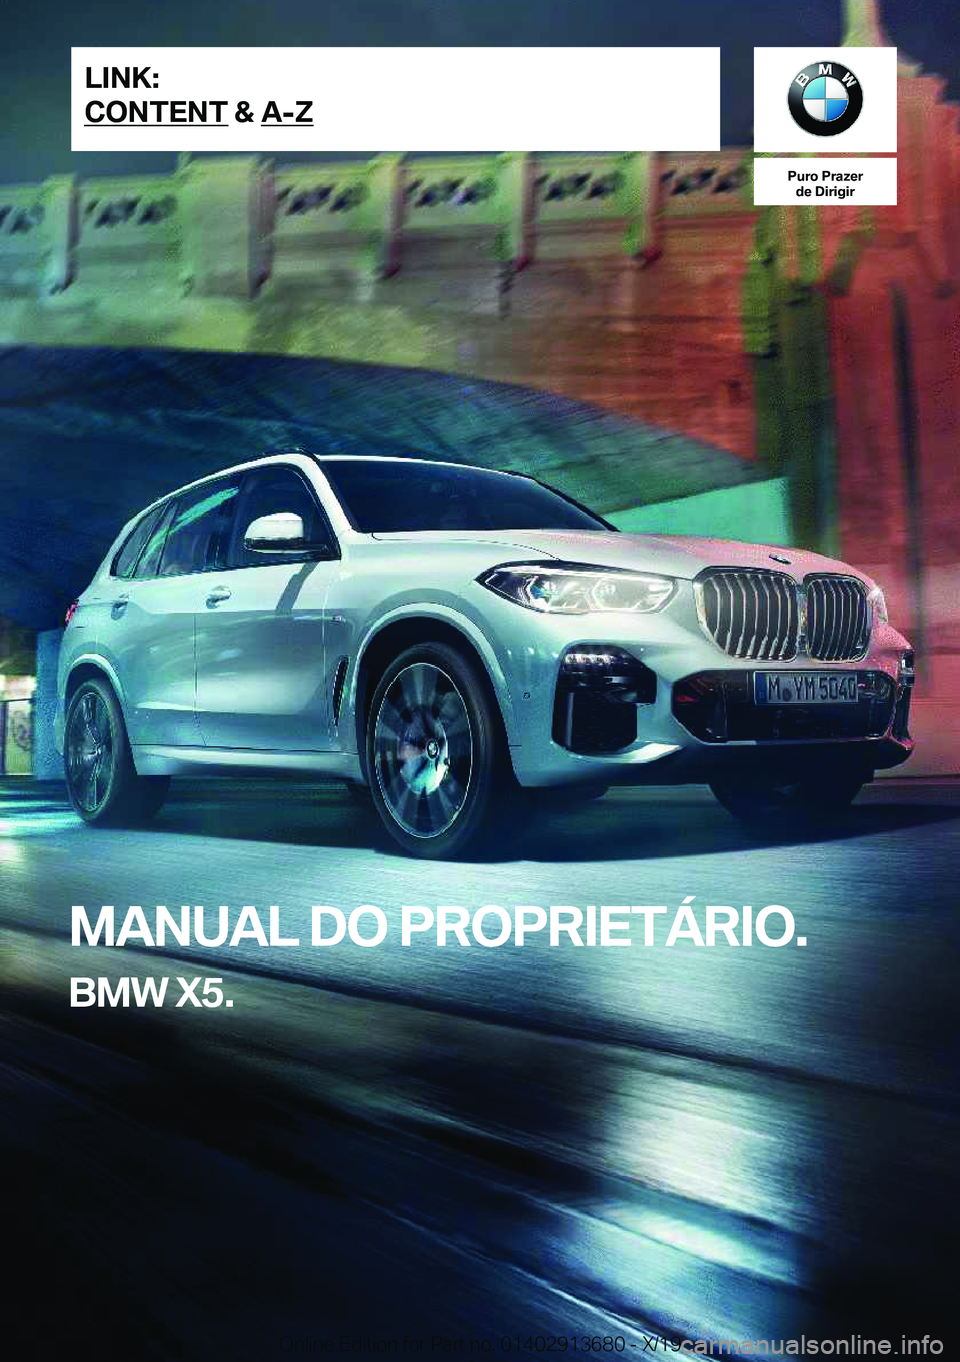 BMW X5 2020  Manual do condutor (in Portuguese) �P�u�r�o��P�r�a�z�e�r�d�e��D�i�r�i�g�i�r
�M�A�N�U�A�L��D�O��P�R�O�P�R�I�E�T�Á�R�I�O�.
�B�M�W��X�5�.�L�I�N�K�:
�C�O�N�T�E�N�T��&��A�-�Z�O�n�l�i�n�e��E�d�i�t�i�o�n��f�o�r��P�a�r�t��n�o�.��0